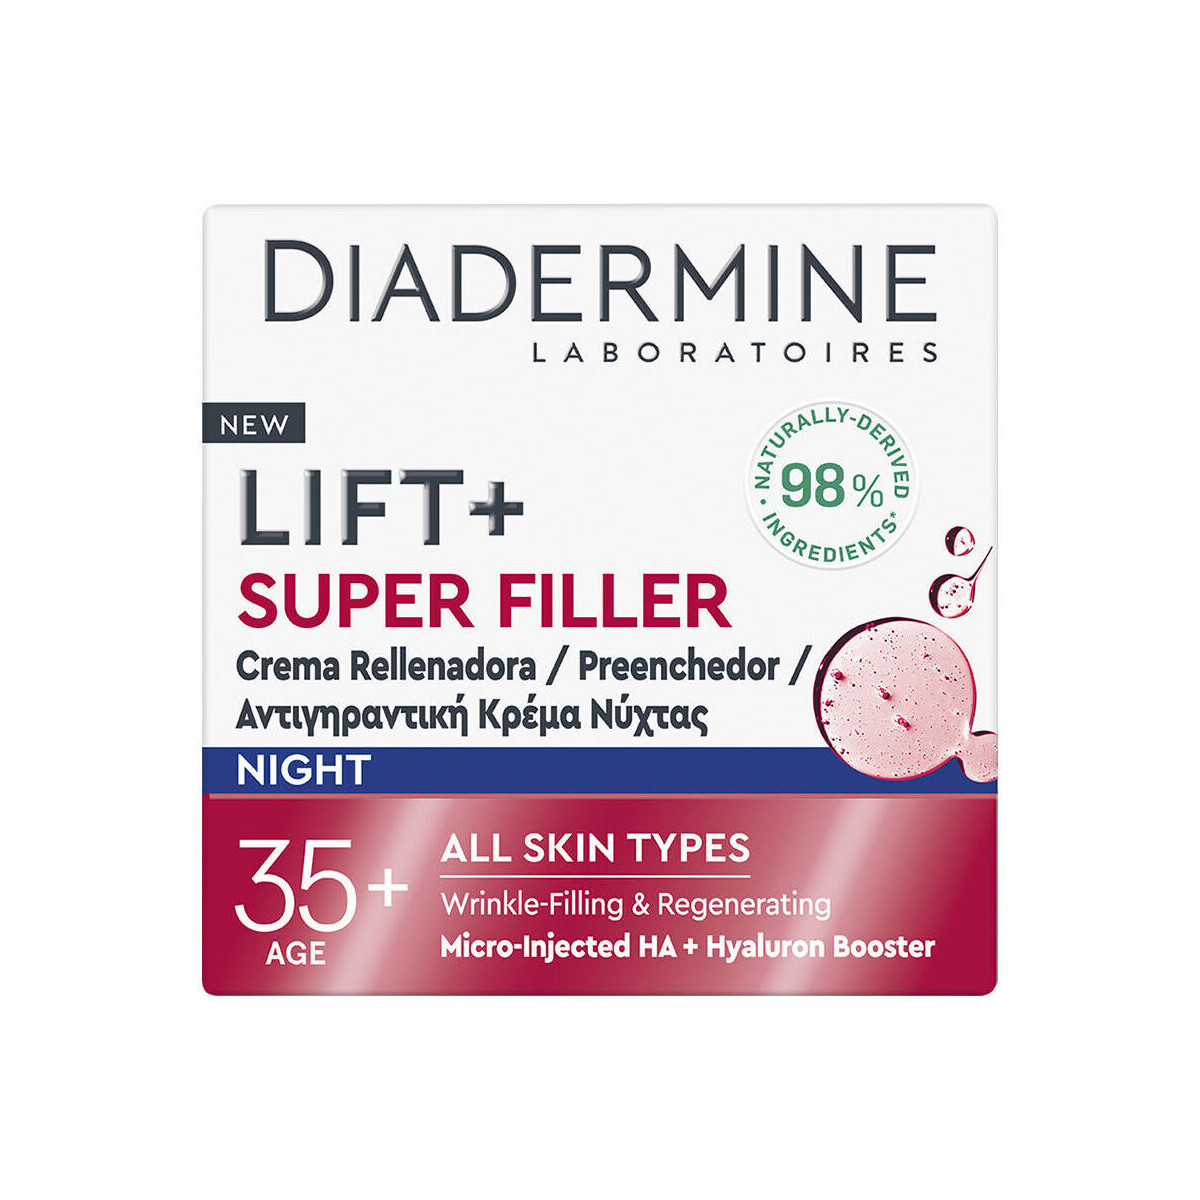 Belleza Antiedad & antiarrugas Diadermine Lift + Super Filler Crema Rellenadora Noche 